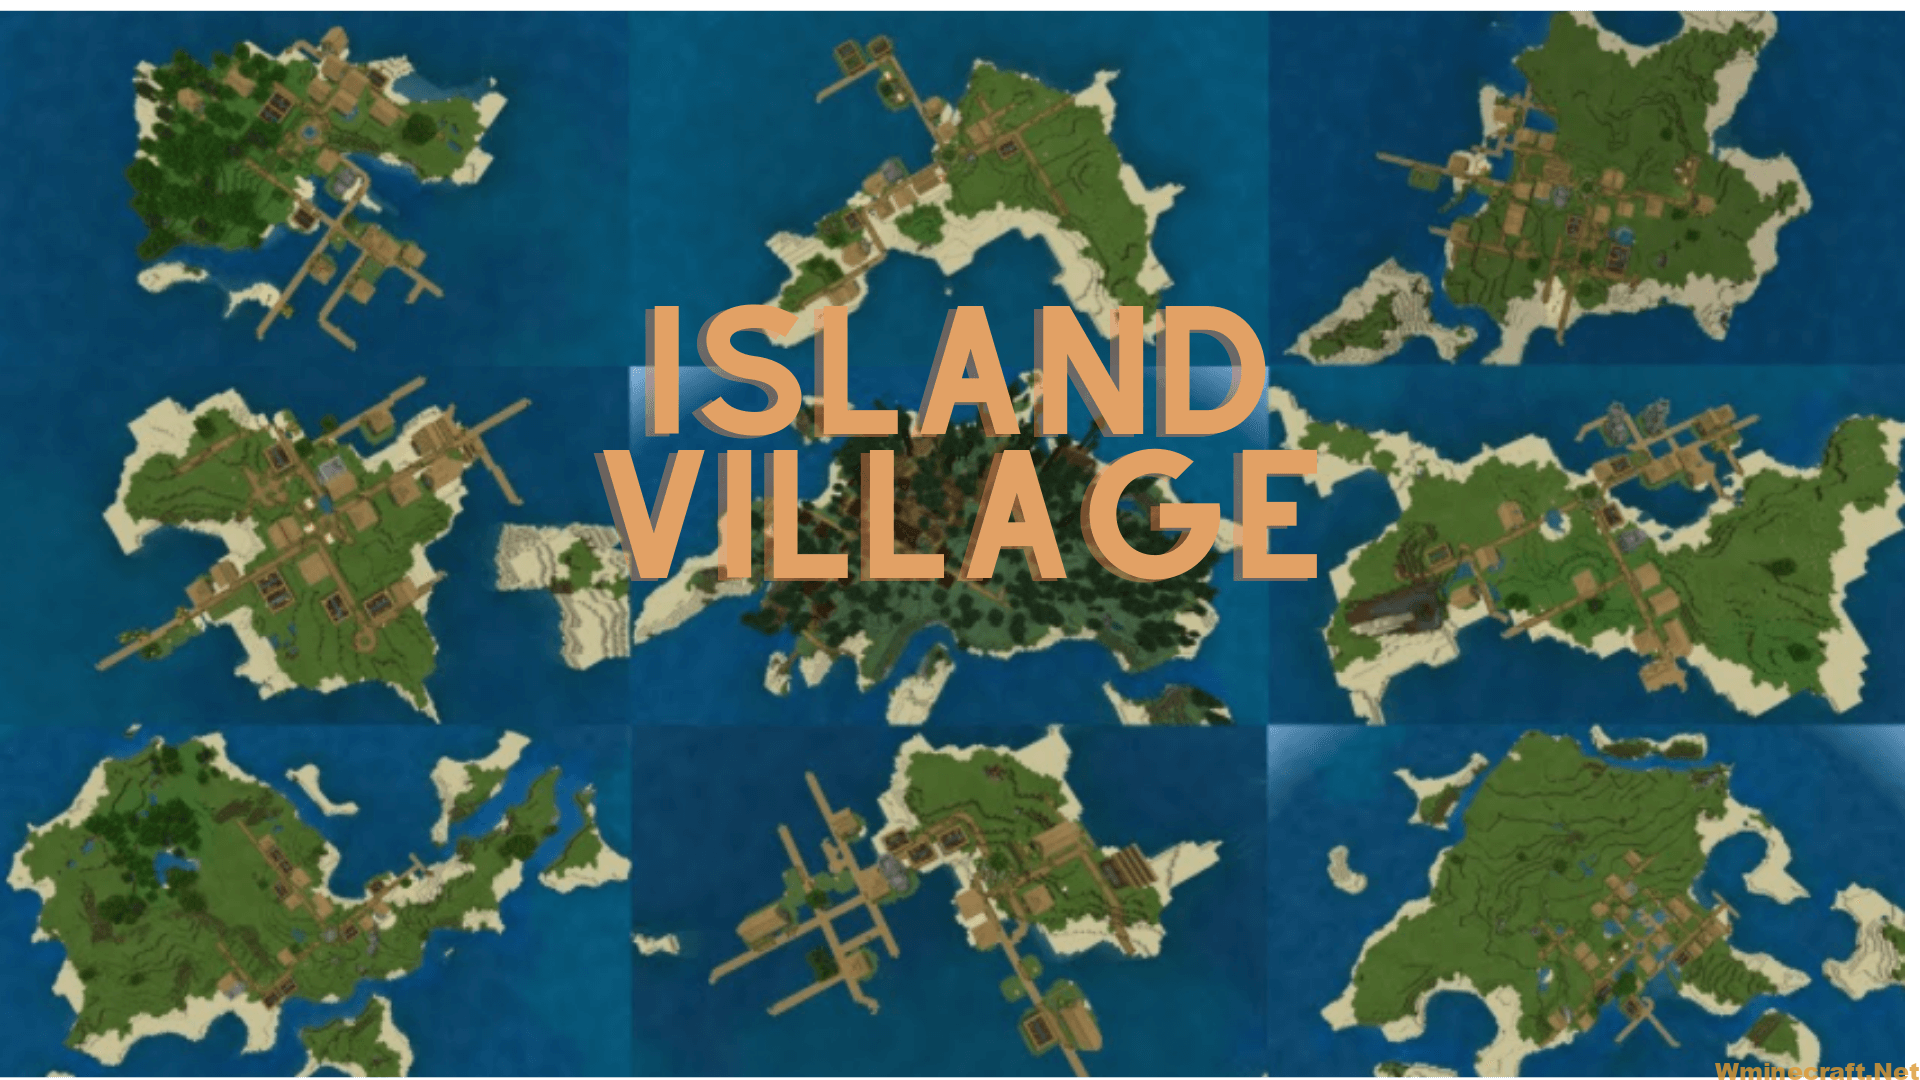 Island village - Seed